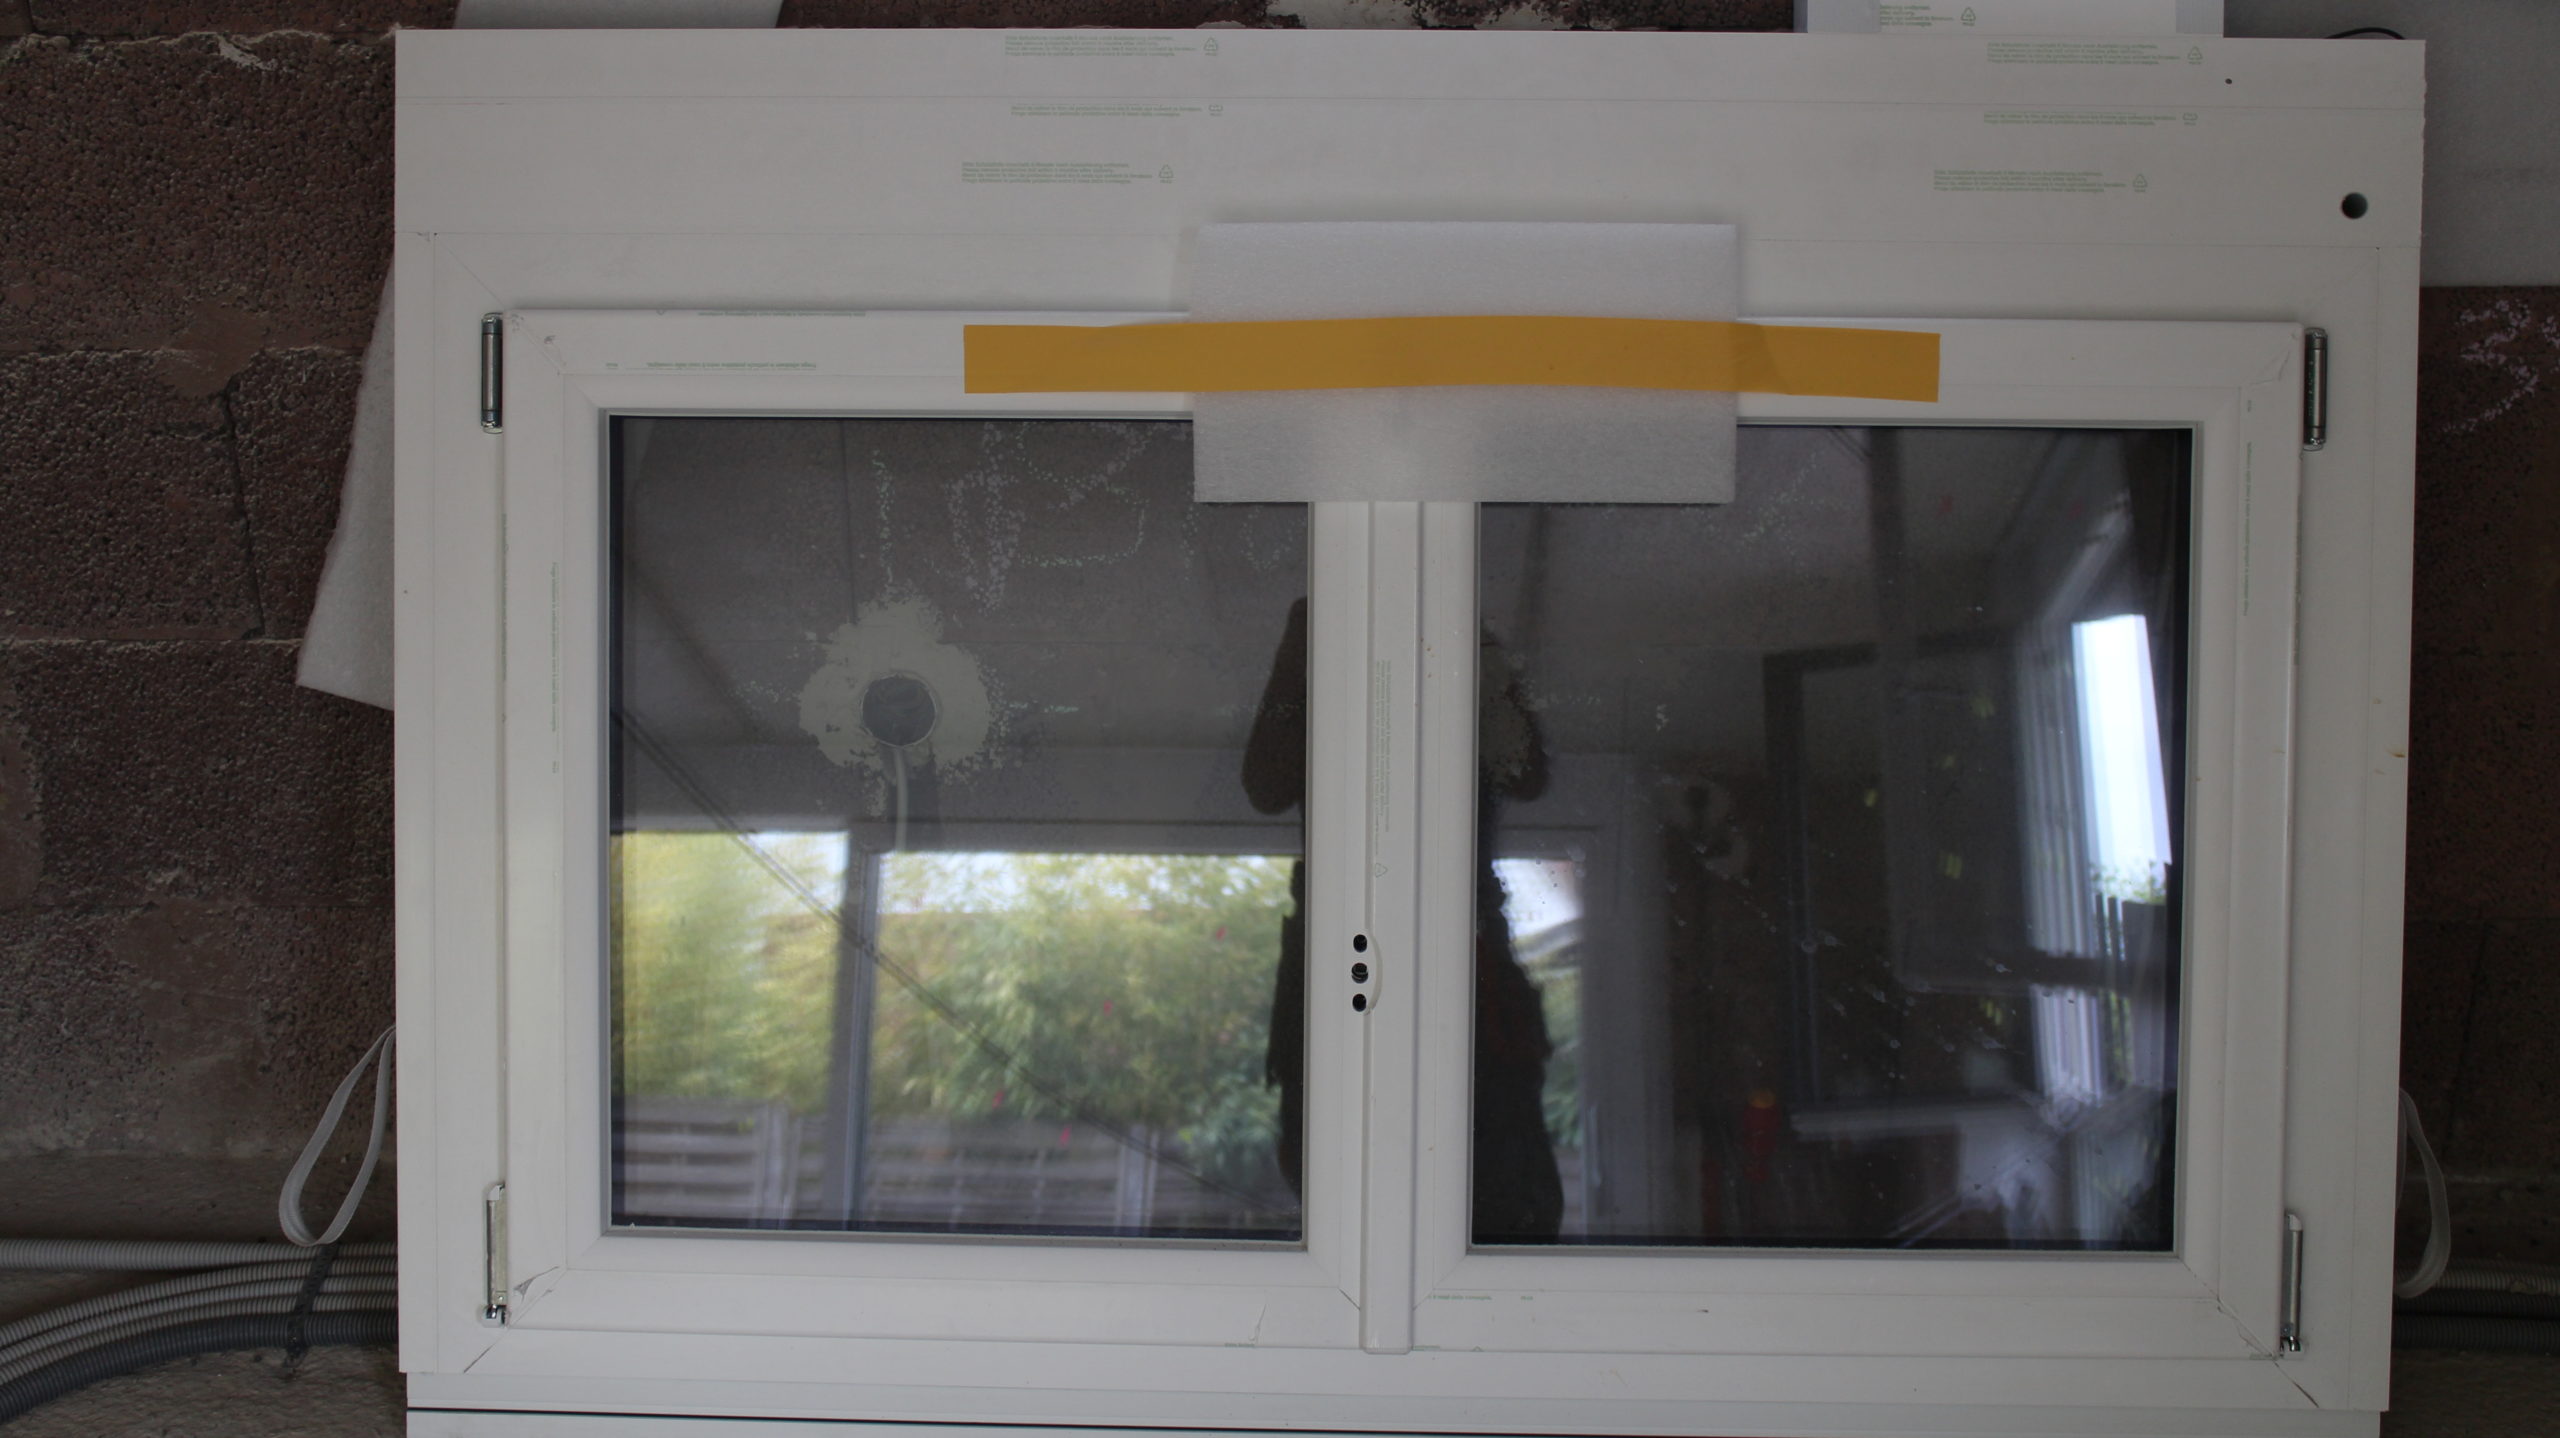 Nagelneues Fenster 3-fach verglast der Marke Internorm